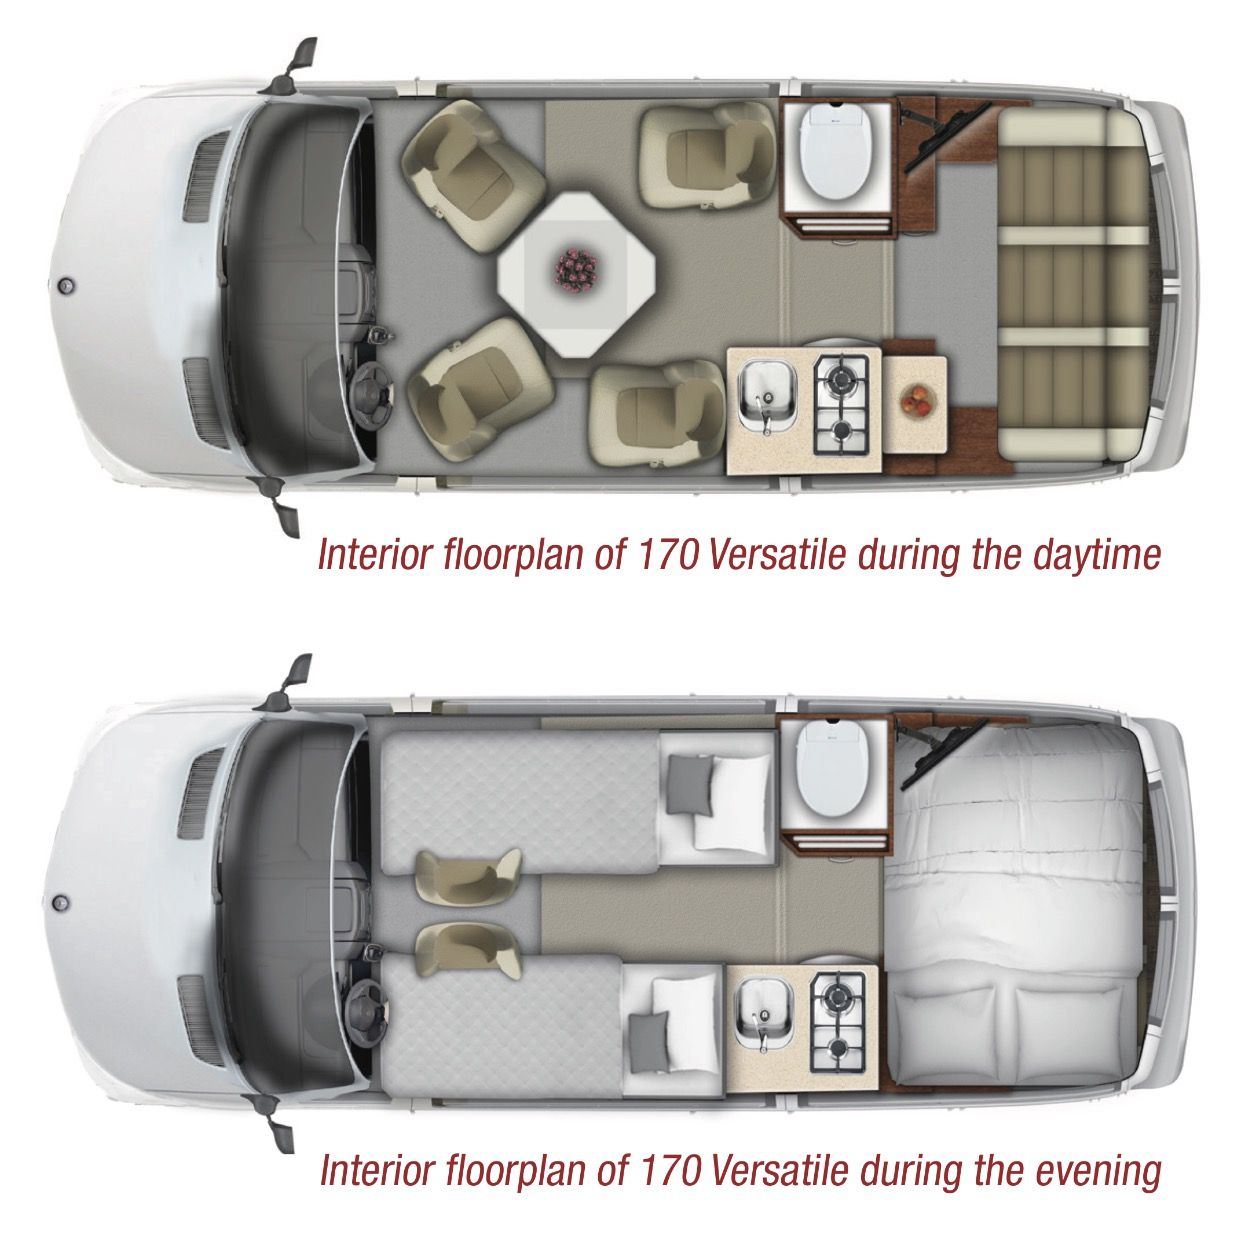 Floor plan for roadtrek 170 Versatile Van camping, Truck